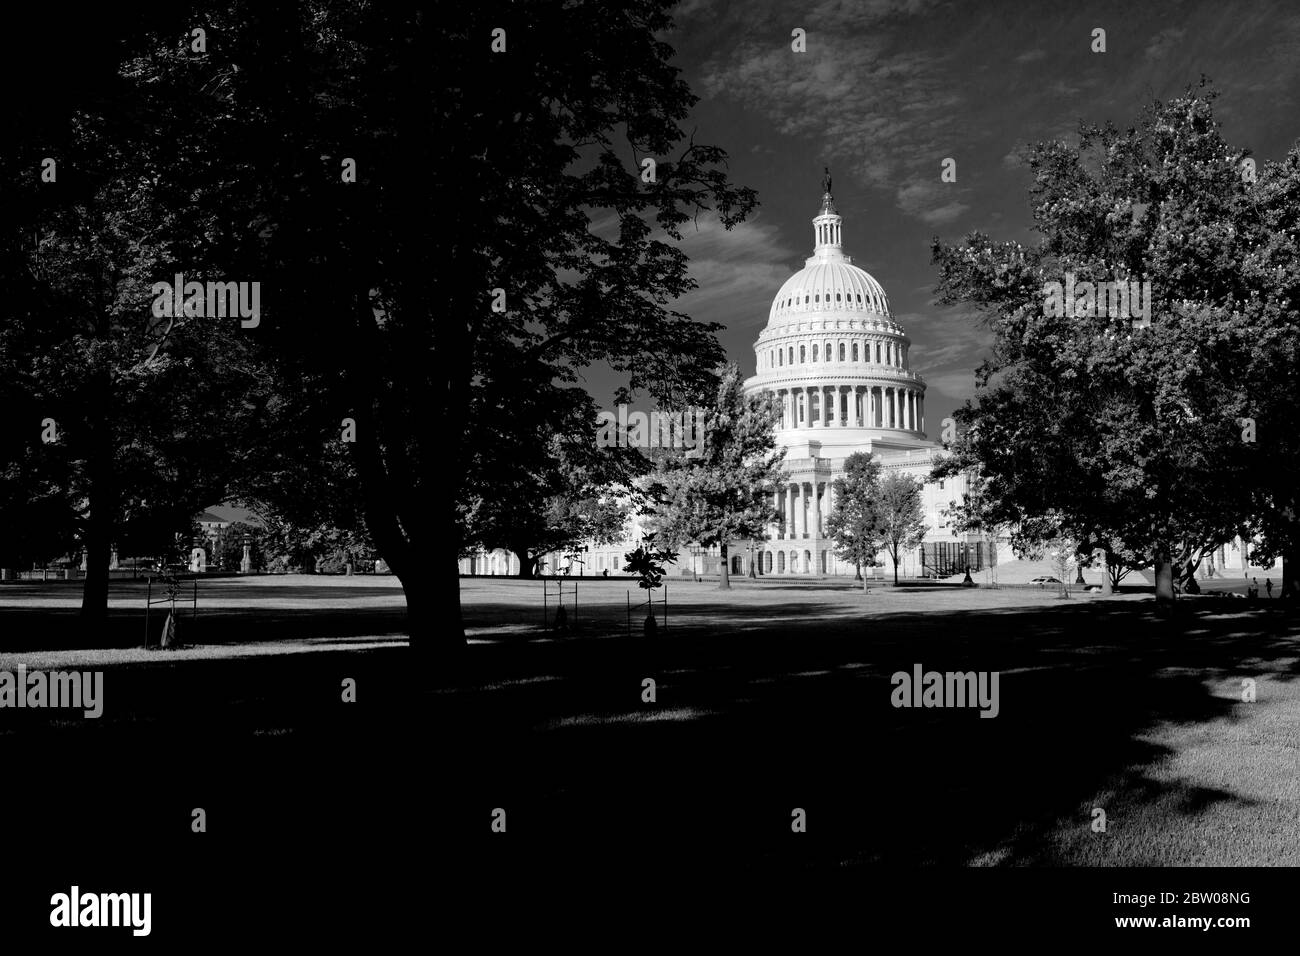 Das Kapitol der Vereinigten Staaten, First St SE, Washington, DC 20004, USA. Fotografiert am Tag. Amerikanisches Reiseziel. Kongress Der Vereinigten Staaten Stockfoto